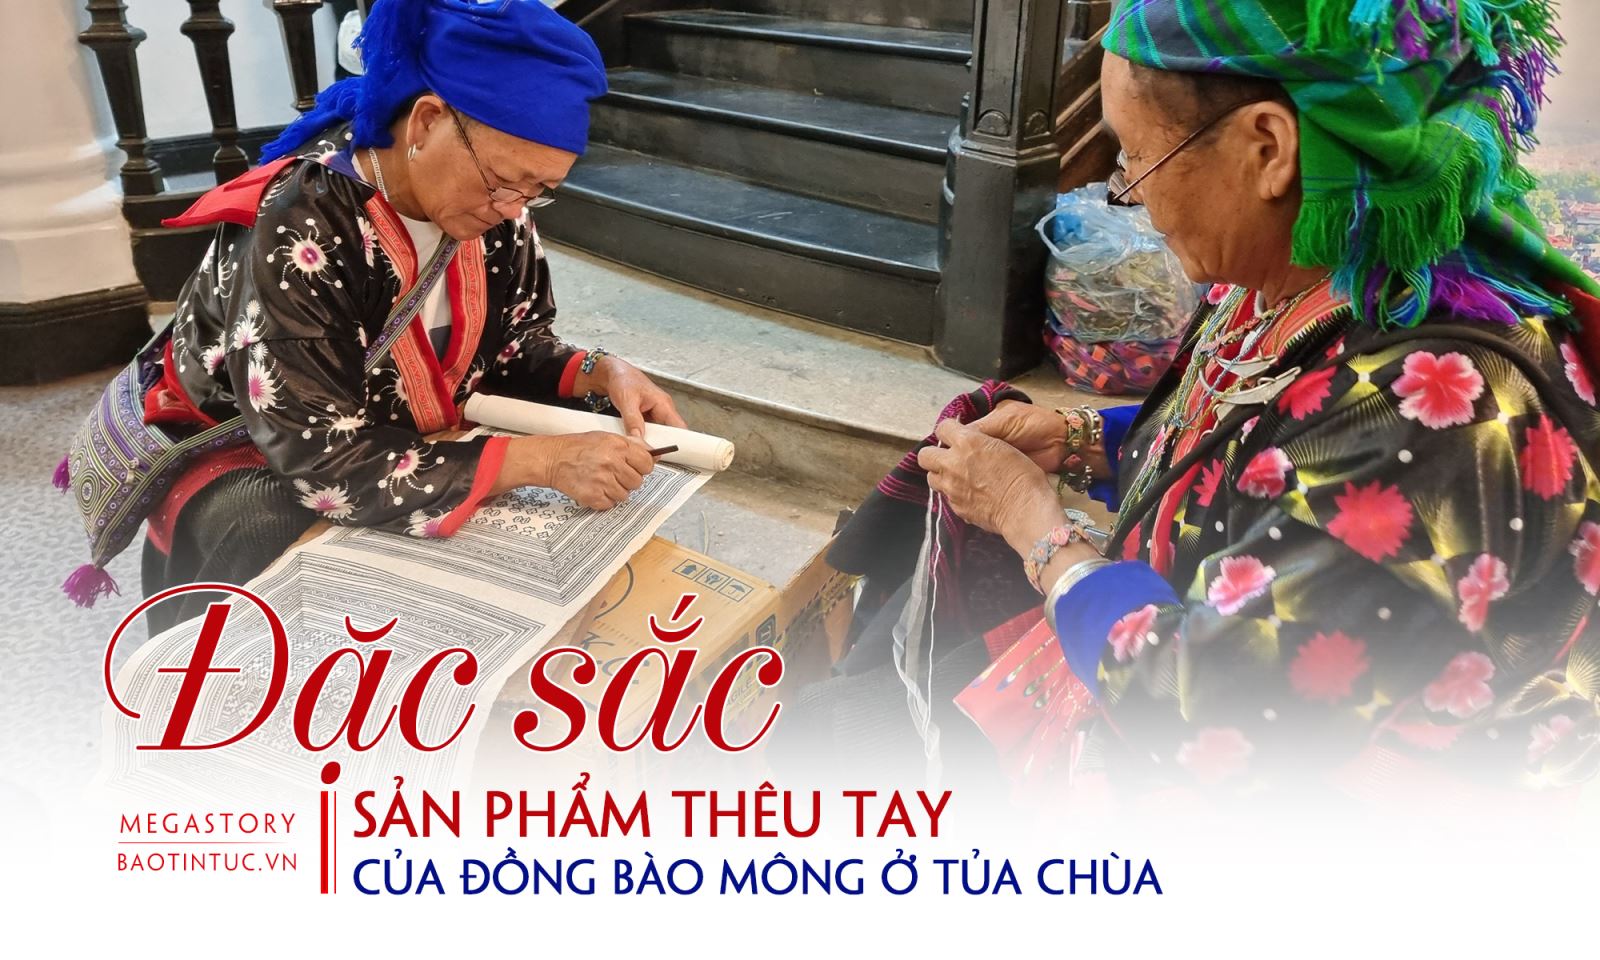 请提供您想要改写的越南语标题，我将为您进行改写。